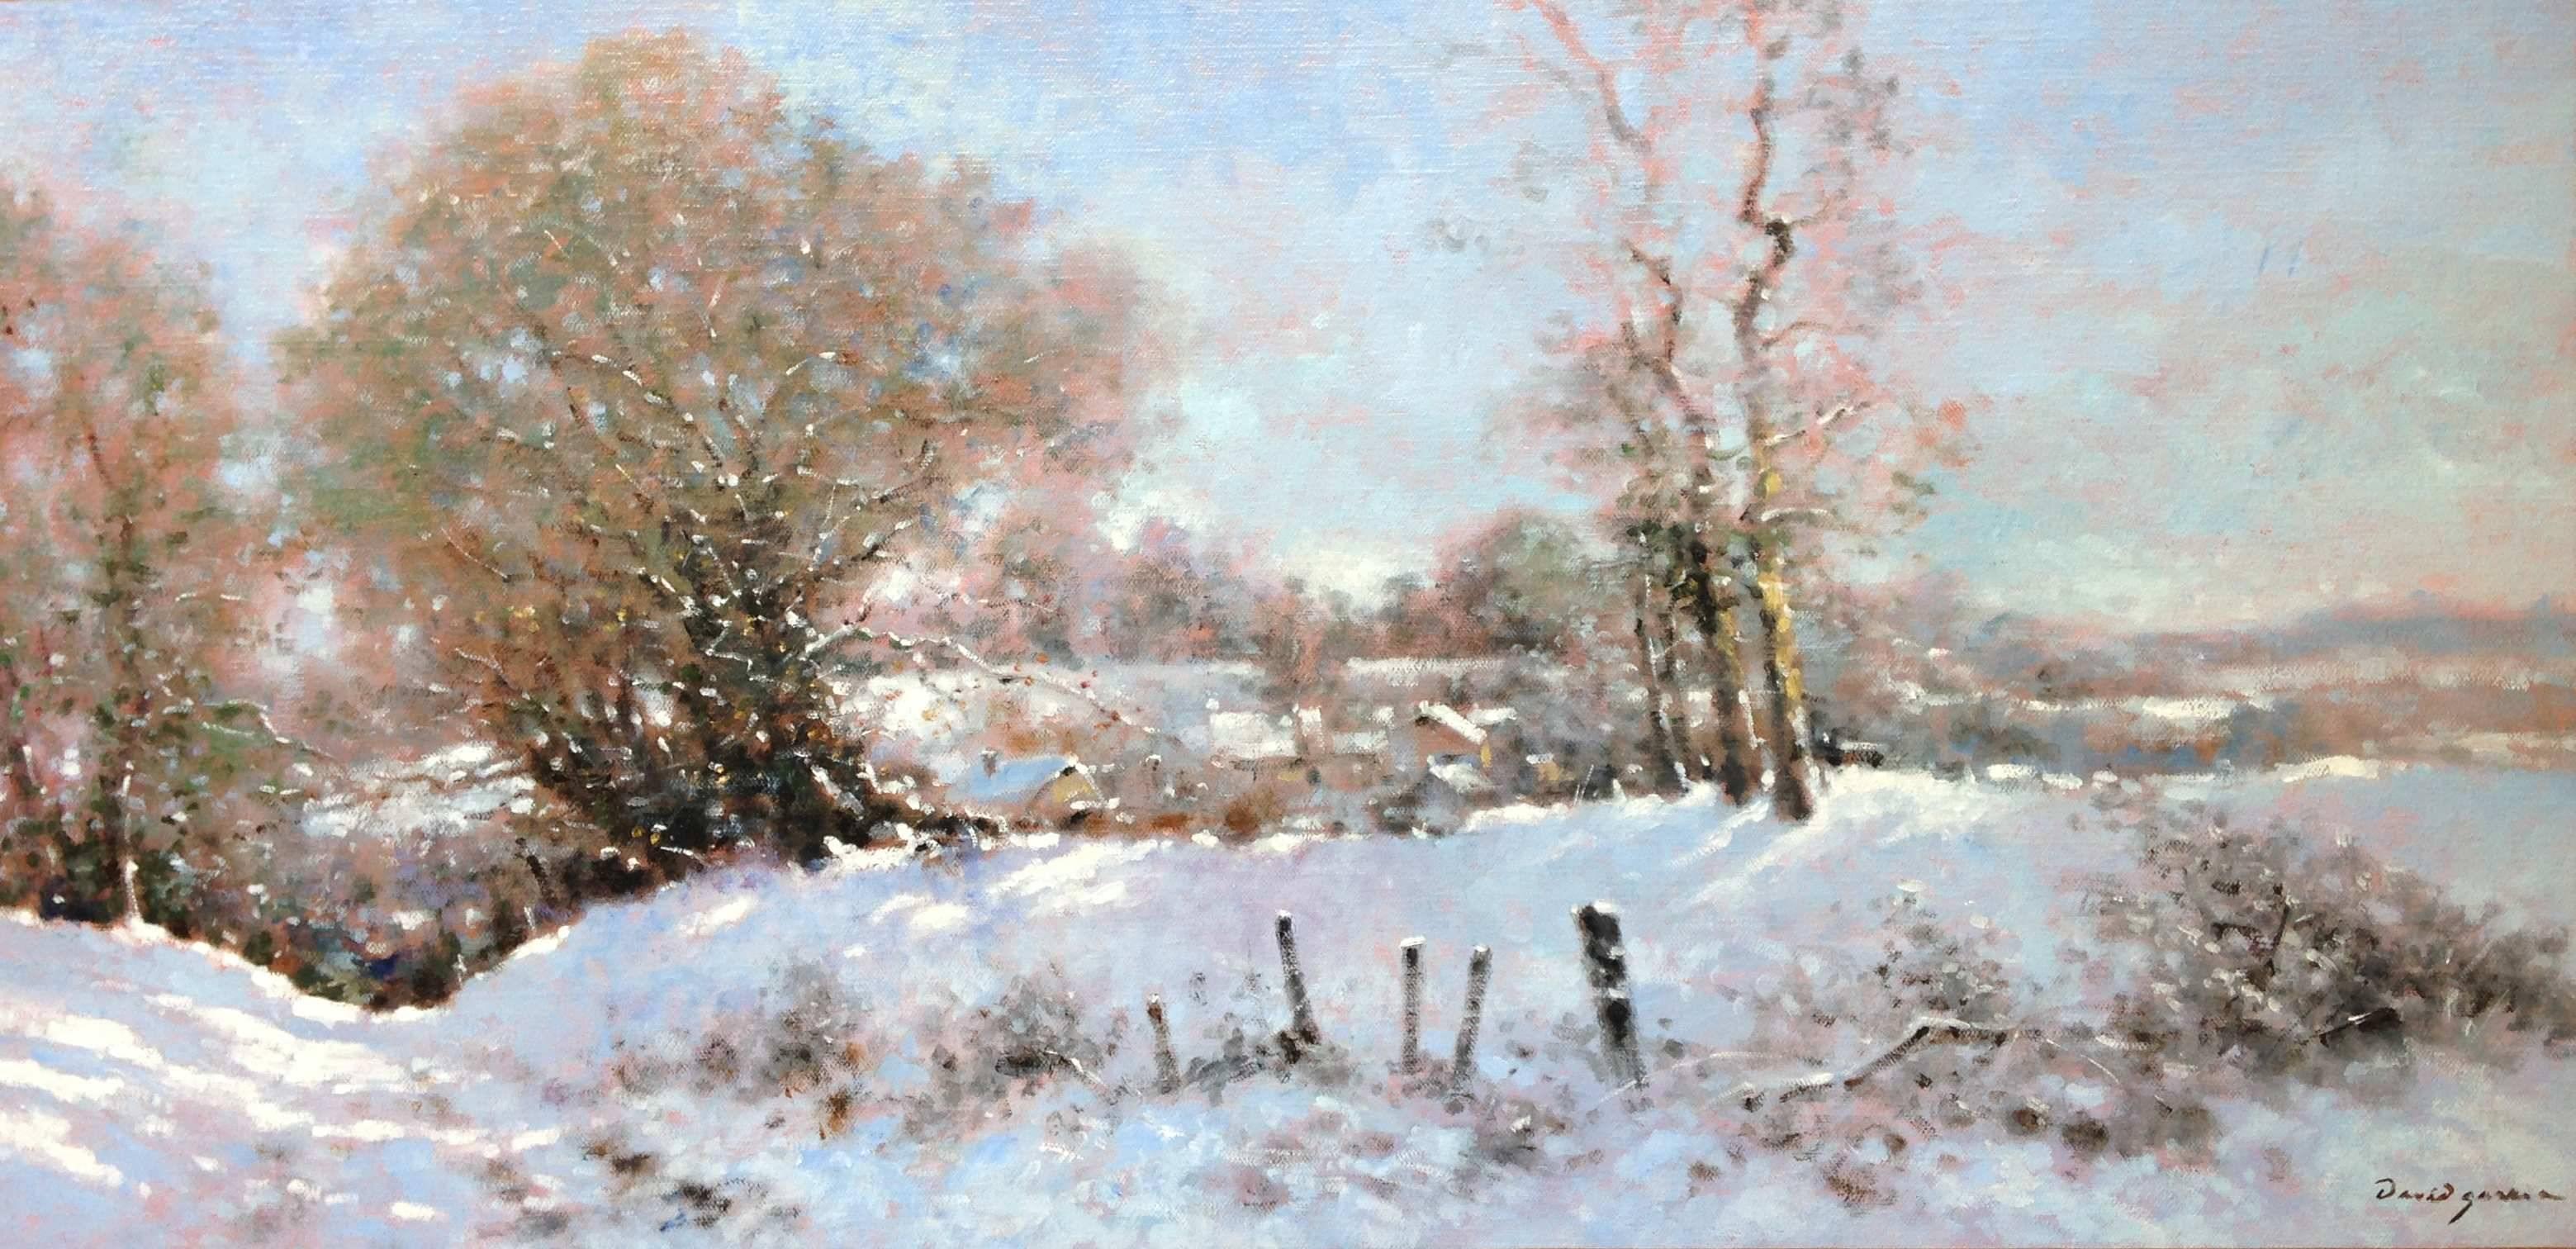 David Garcia Landscape Painting - Snow landscape